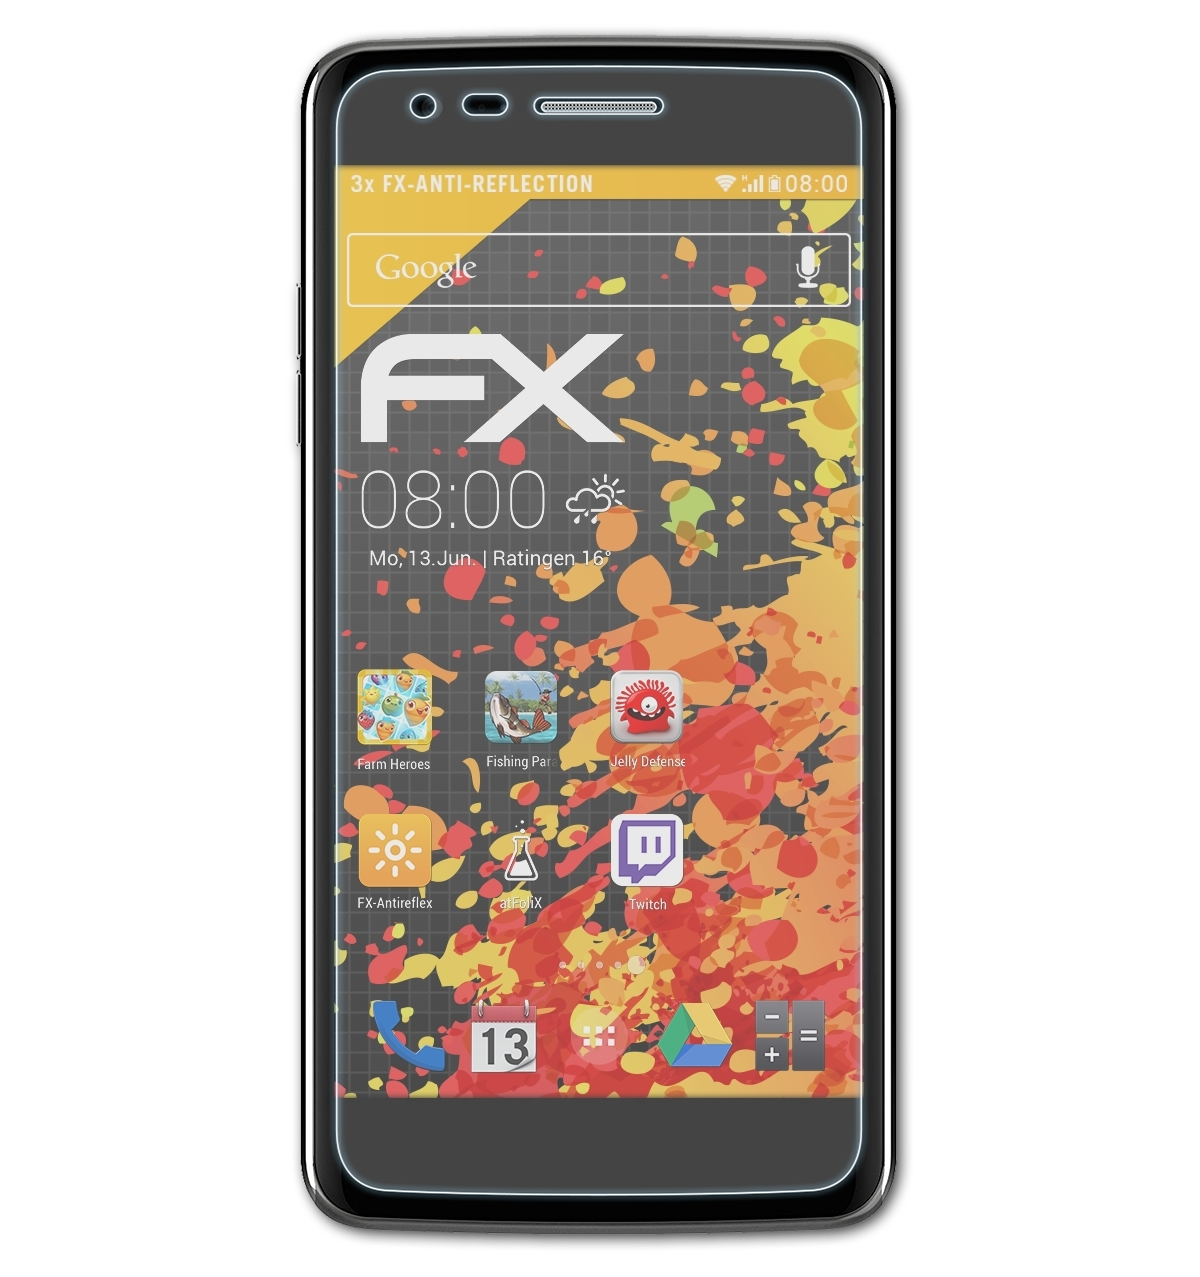 ATFOLIX 3x (2017)) K8 FX-Antireflex LG Displayschutz(für